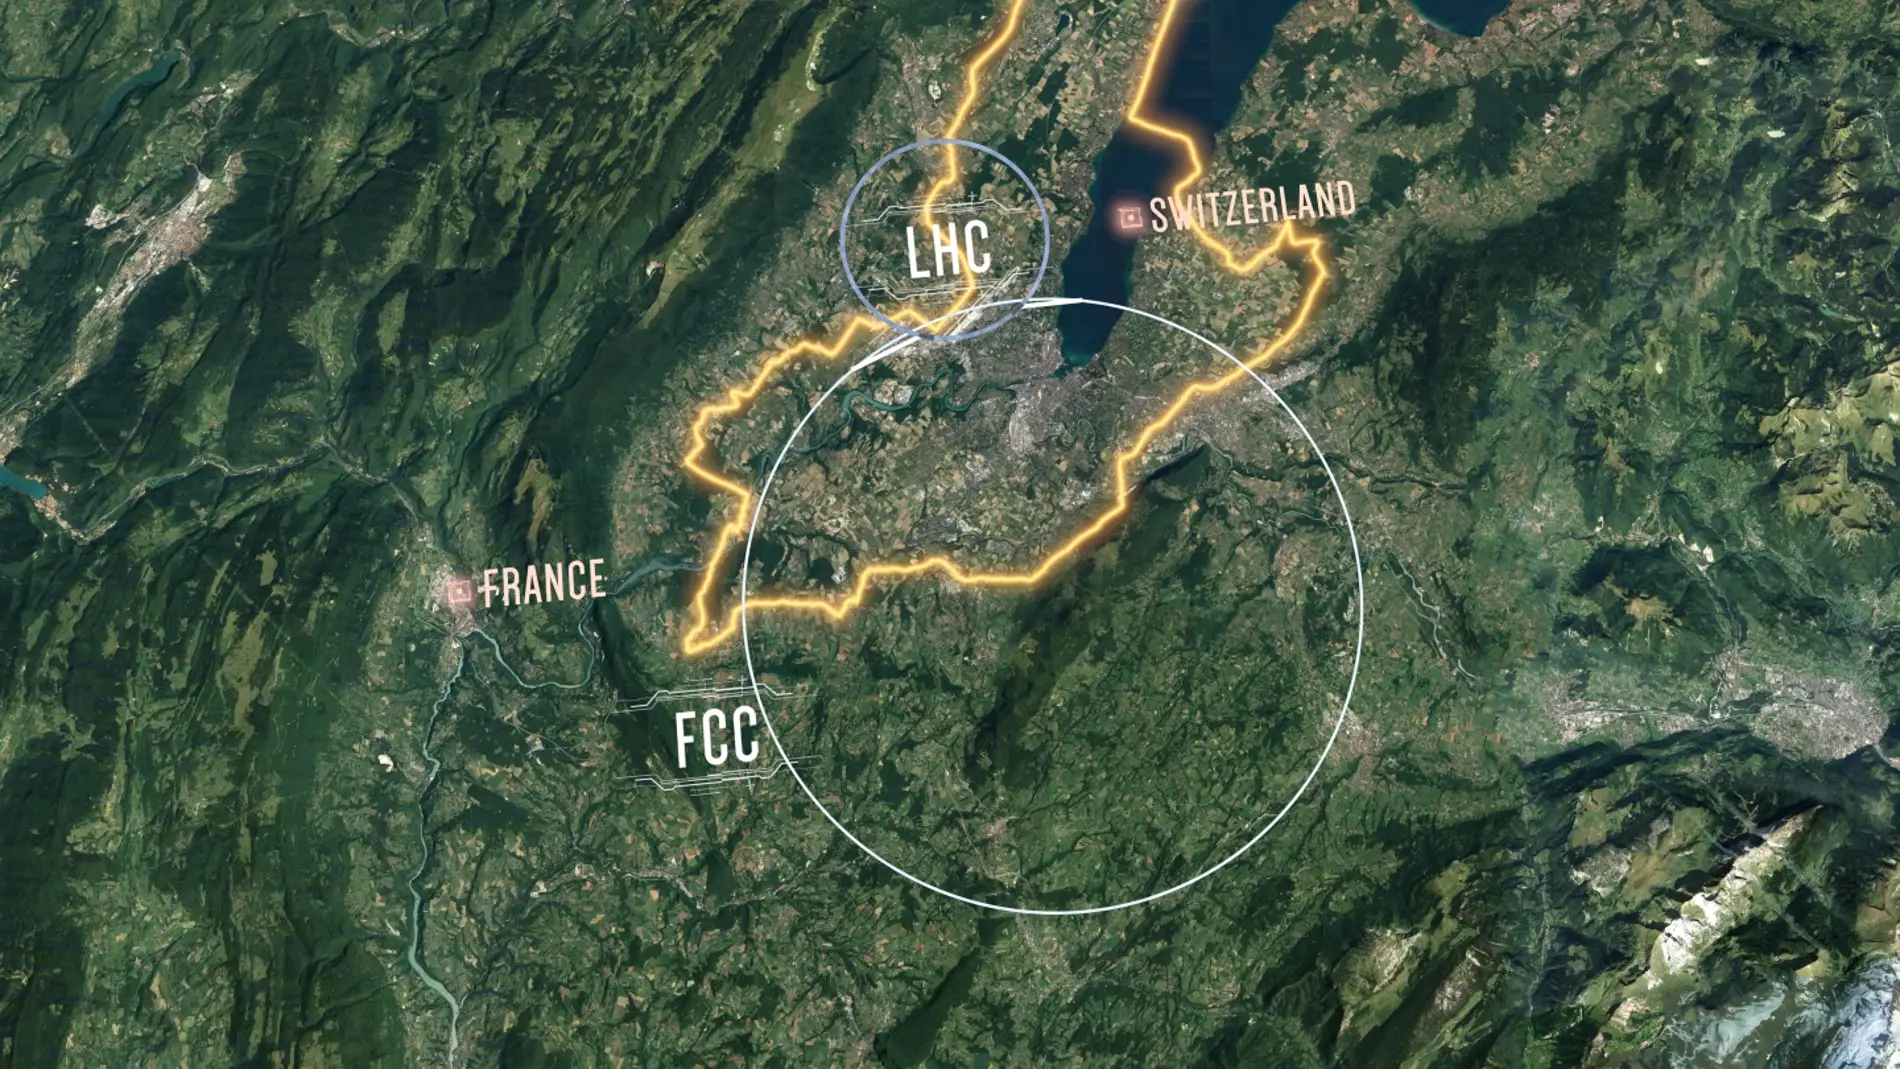 El futuro acelerador circular del CERN dejara pequeno al LHC